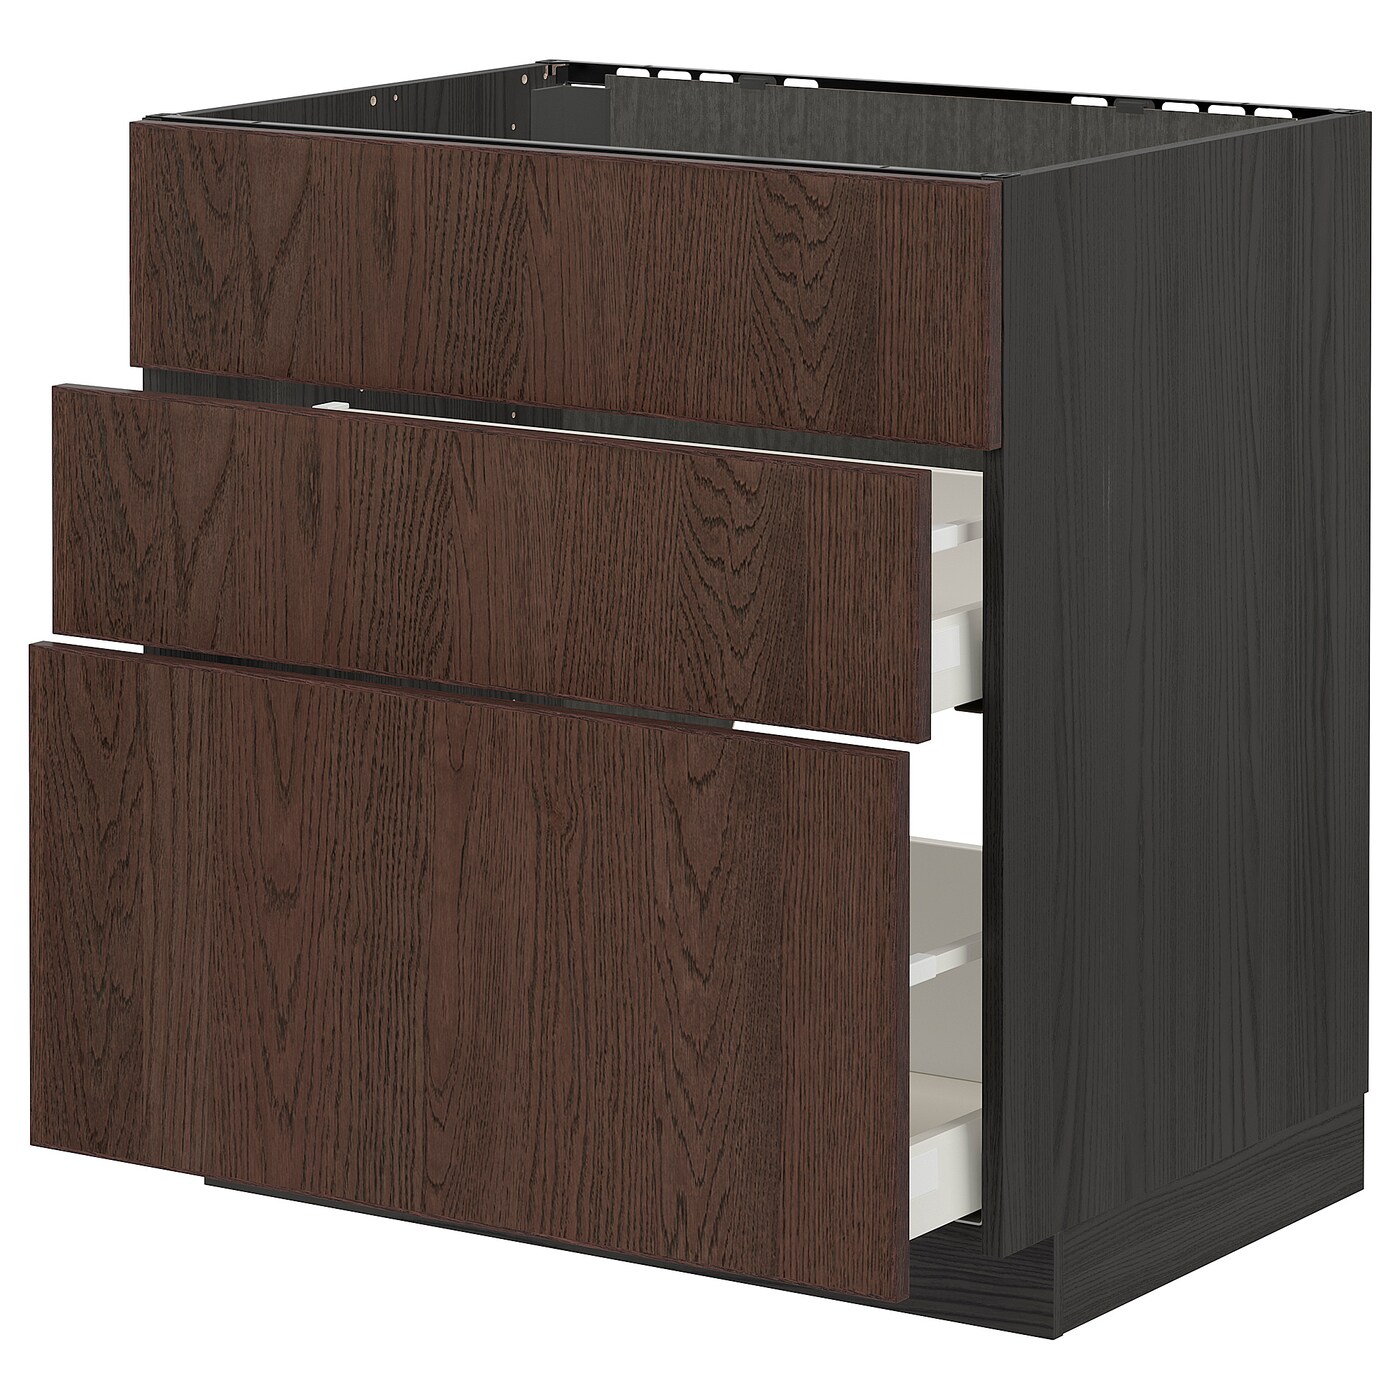 Напольный шкаф - METOD / MAXIMERA IKEA/ МЕТОД/ МАКСИМЕРА ИКЕА,  80х80 см, черный/коричневый